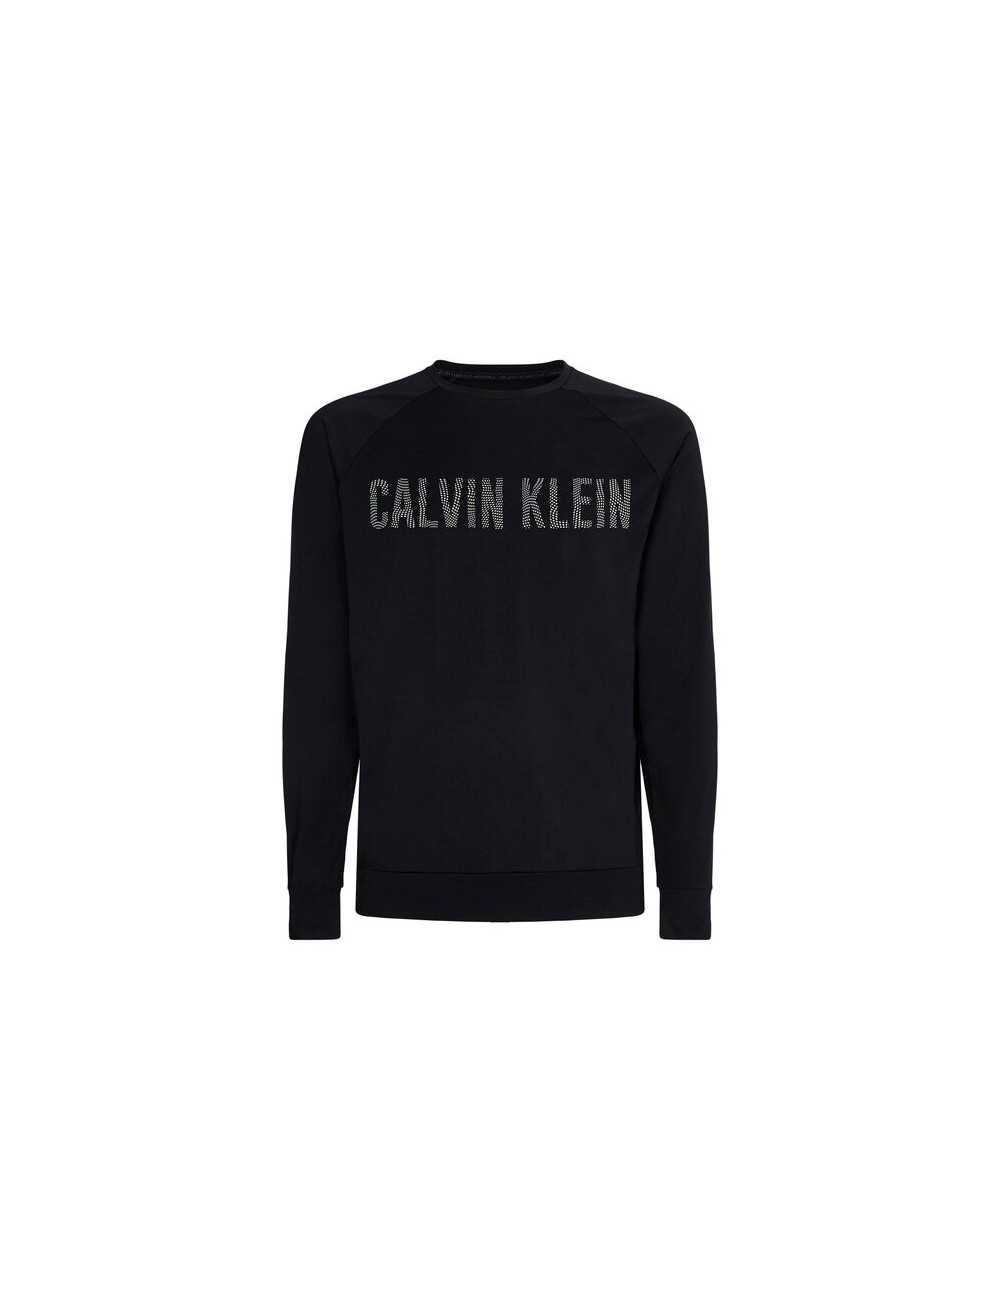 T-shirt Calvin Klein uomo manica lunga nero logo - T-shirt & Polo Uomo